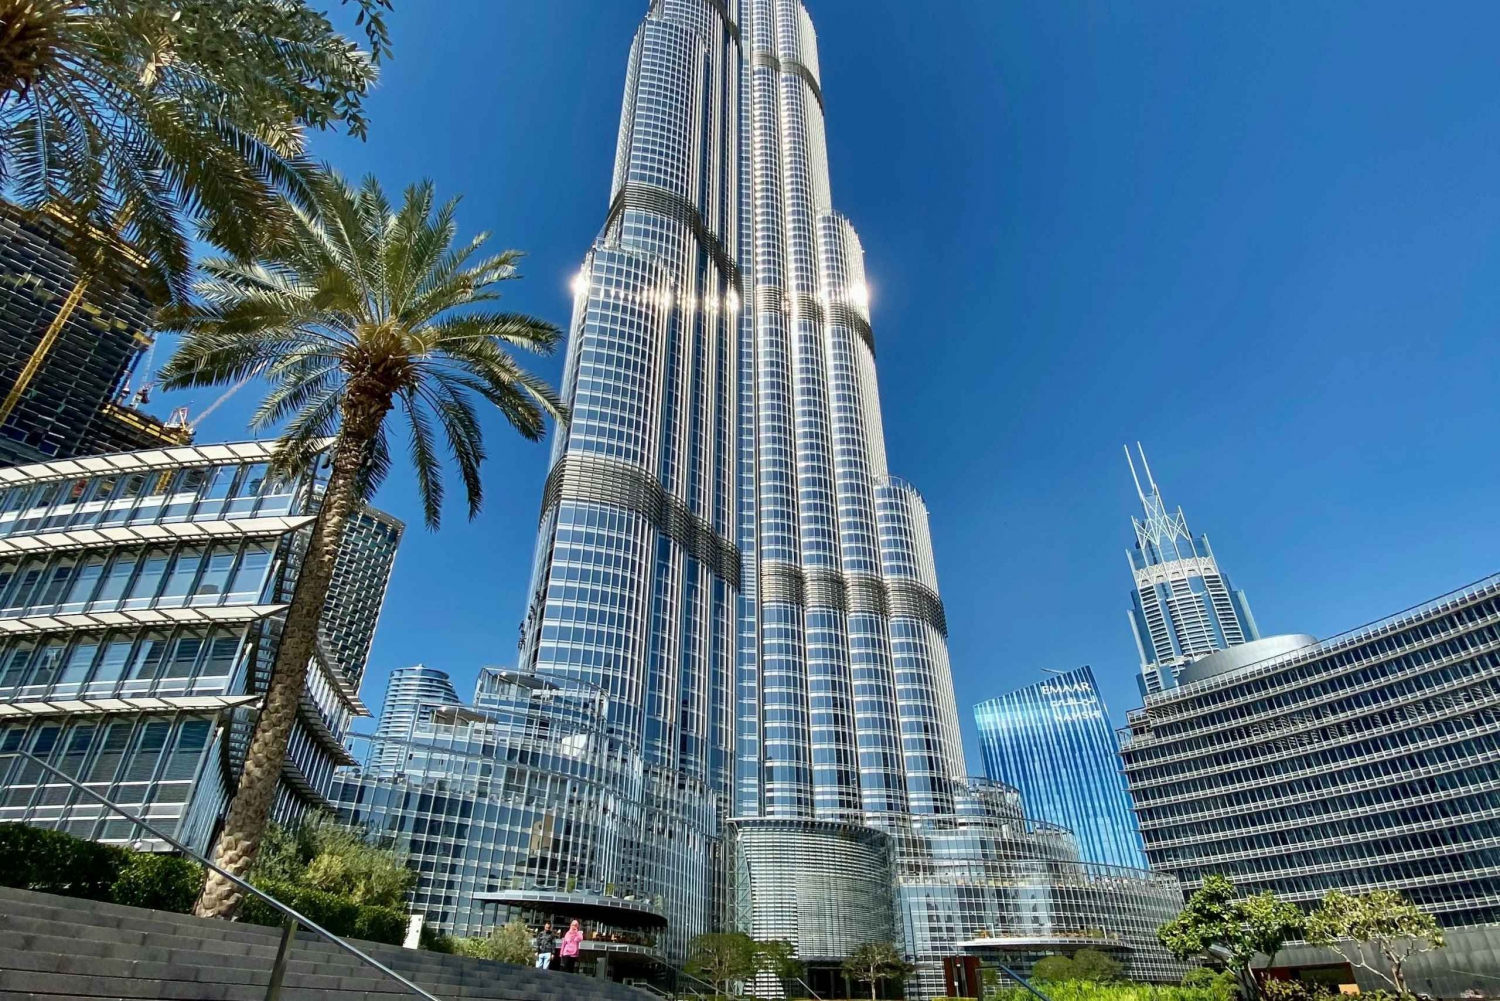 Privat Dubai-utflykt med Burj Khalifa (hoppa över kön)